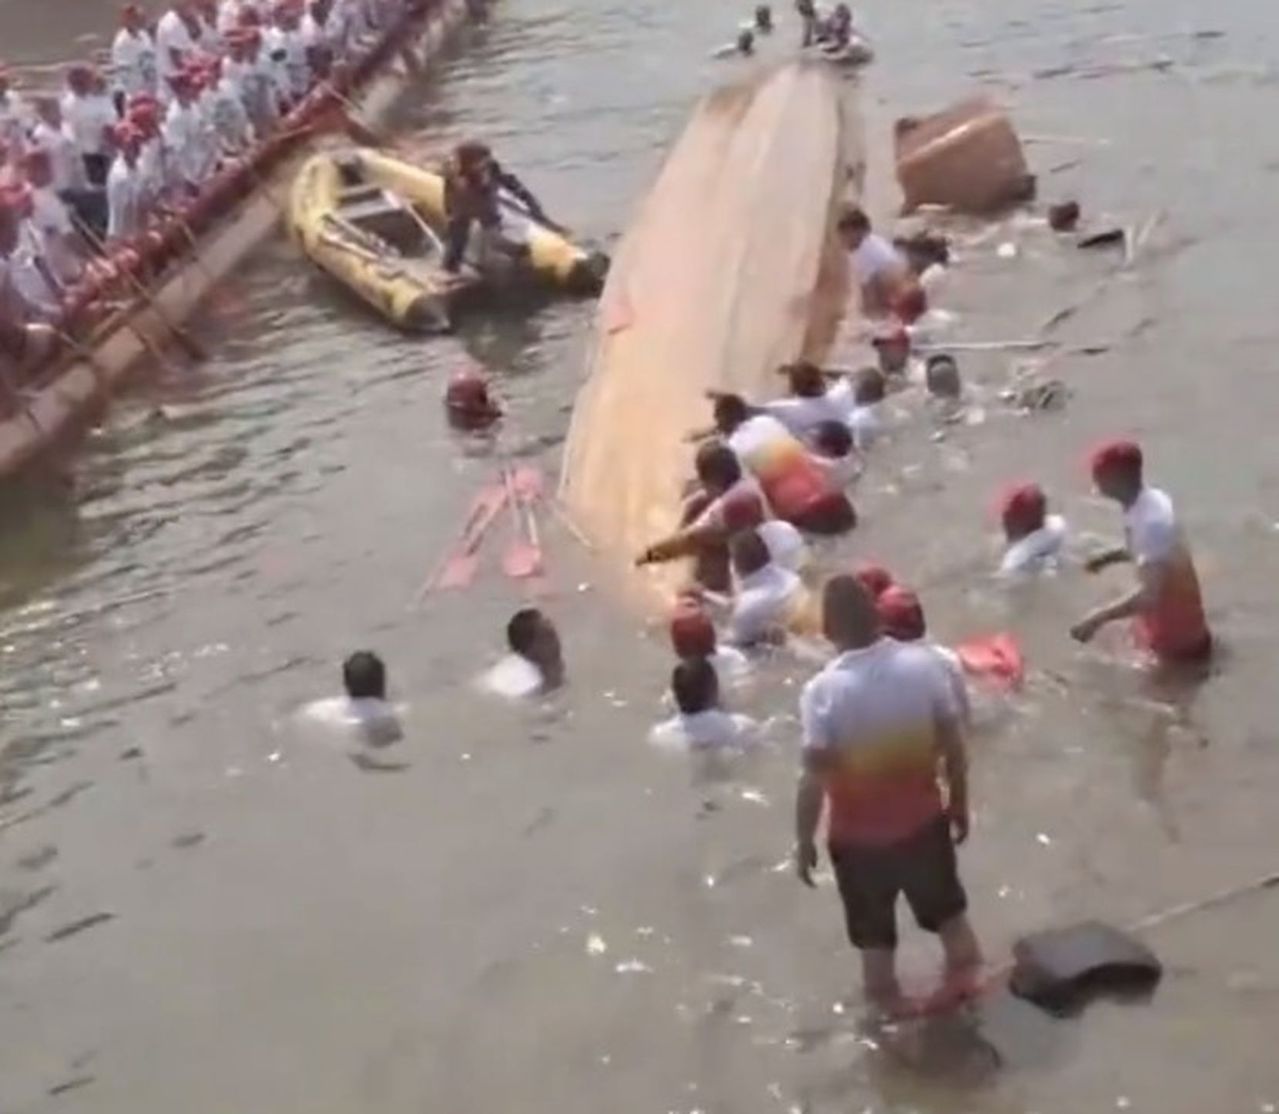 湖北一艘龙舟8日竞赛时不慎翻覆，一名桨手不幸溺毙。(取材自微博)